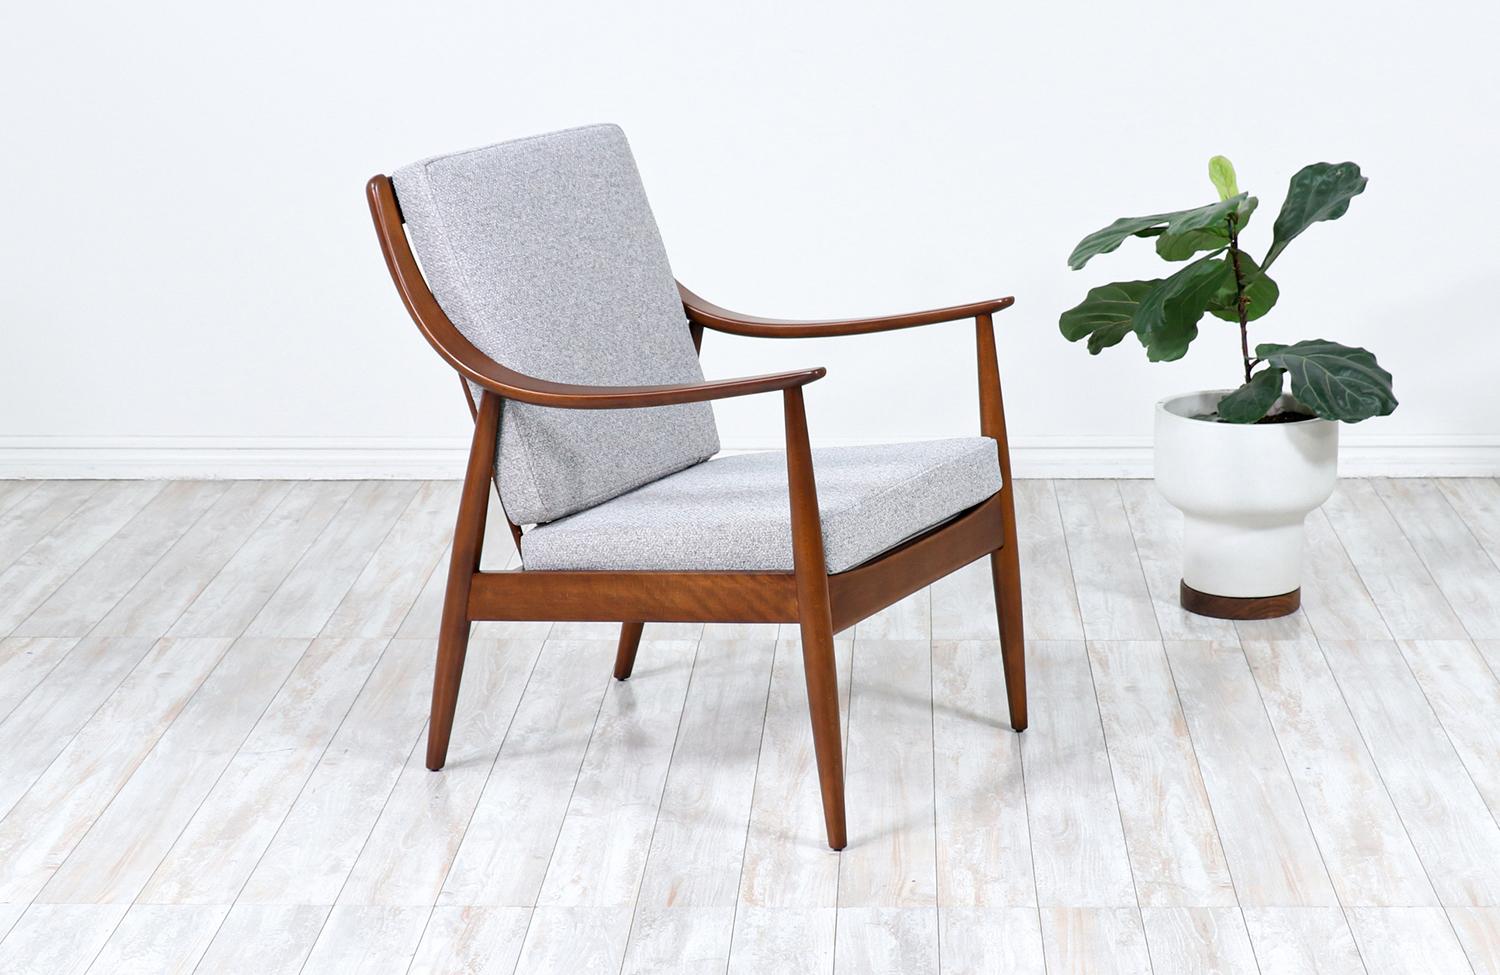 Chaise longue conçue par Peter Hvidt & Orla Mølgaard-Nielsen pour France & Daverkosen au Danemark vers les années 1950. Ce magnifique modèle FD-146 présente un cadre en bois de hêtre teinté noyer avec des accoudoirs incurvés. Le dossier comporte